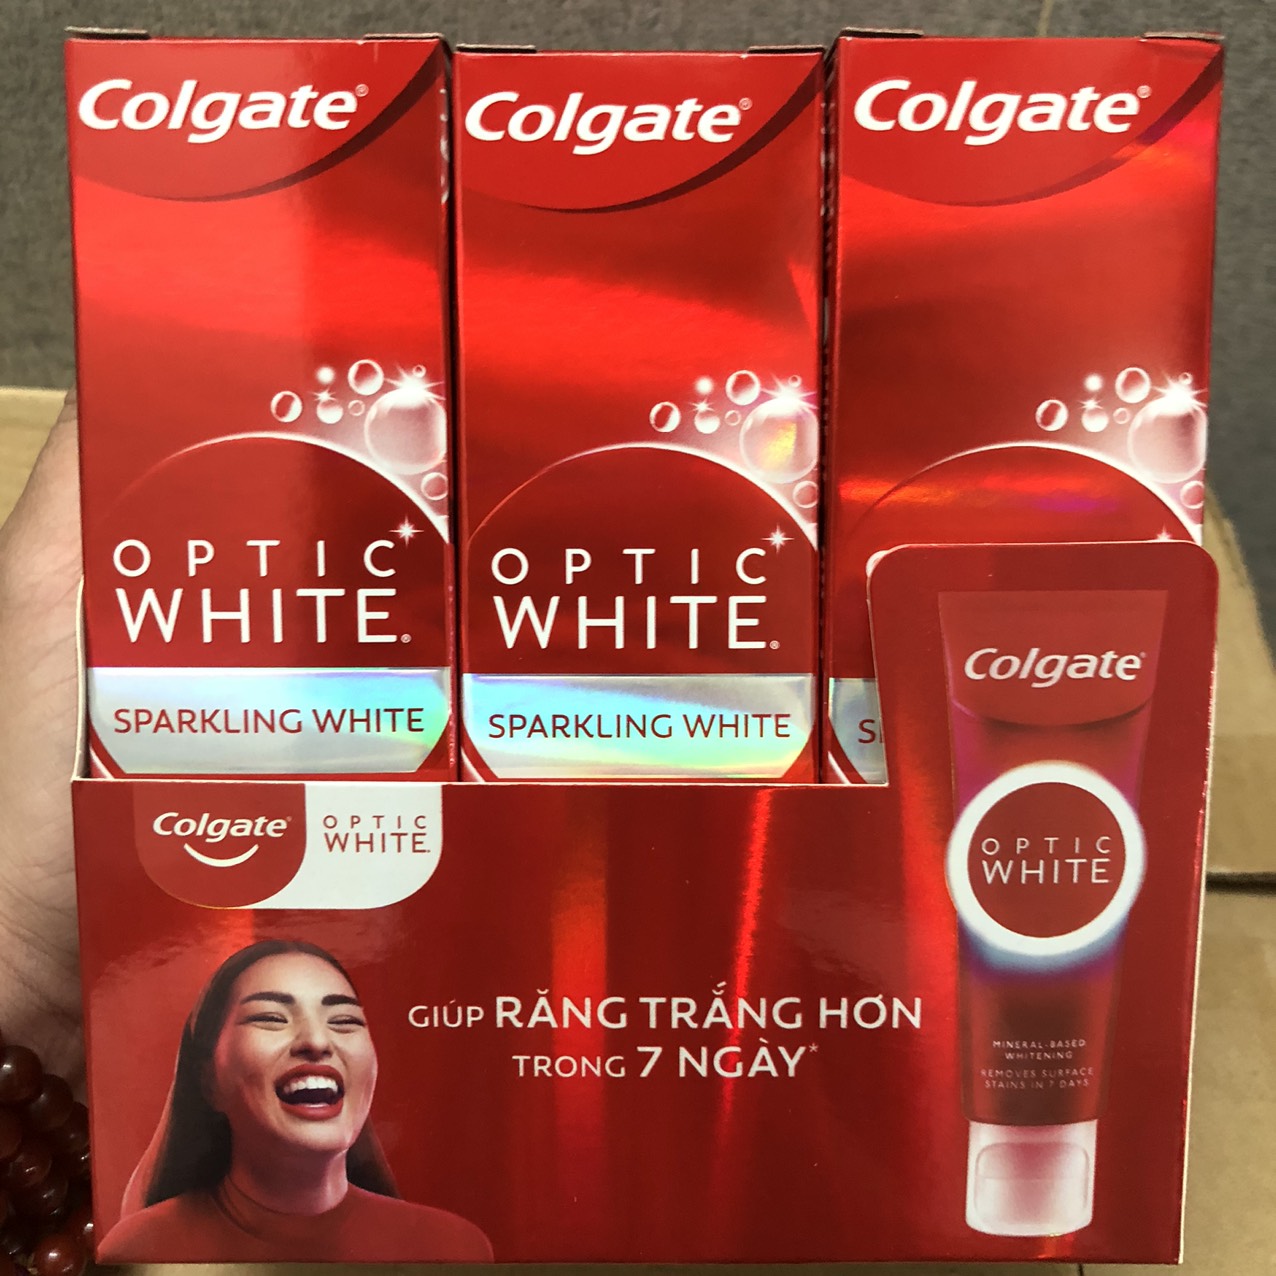 Kem đánh răng Colgate Optic White Plus Shine làm trắng sáng răng 100g thumbnail